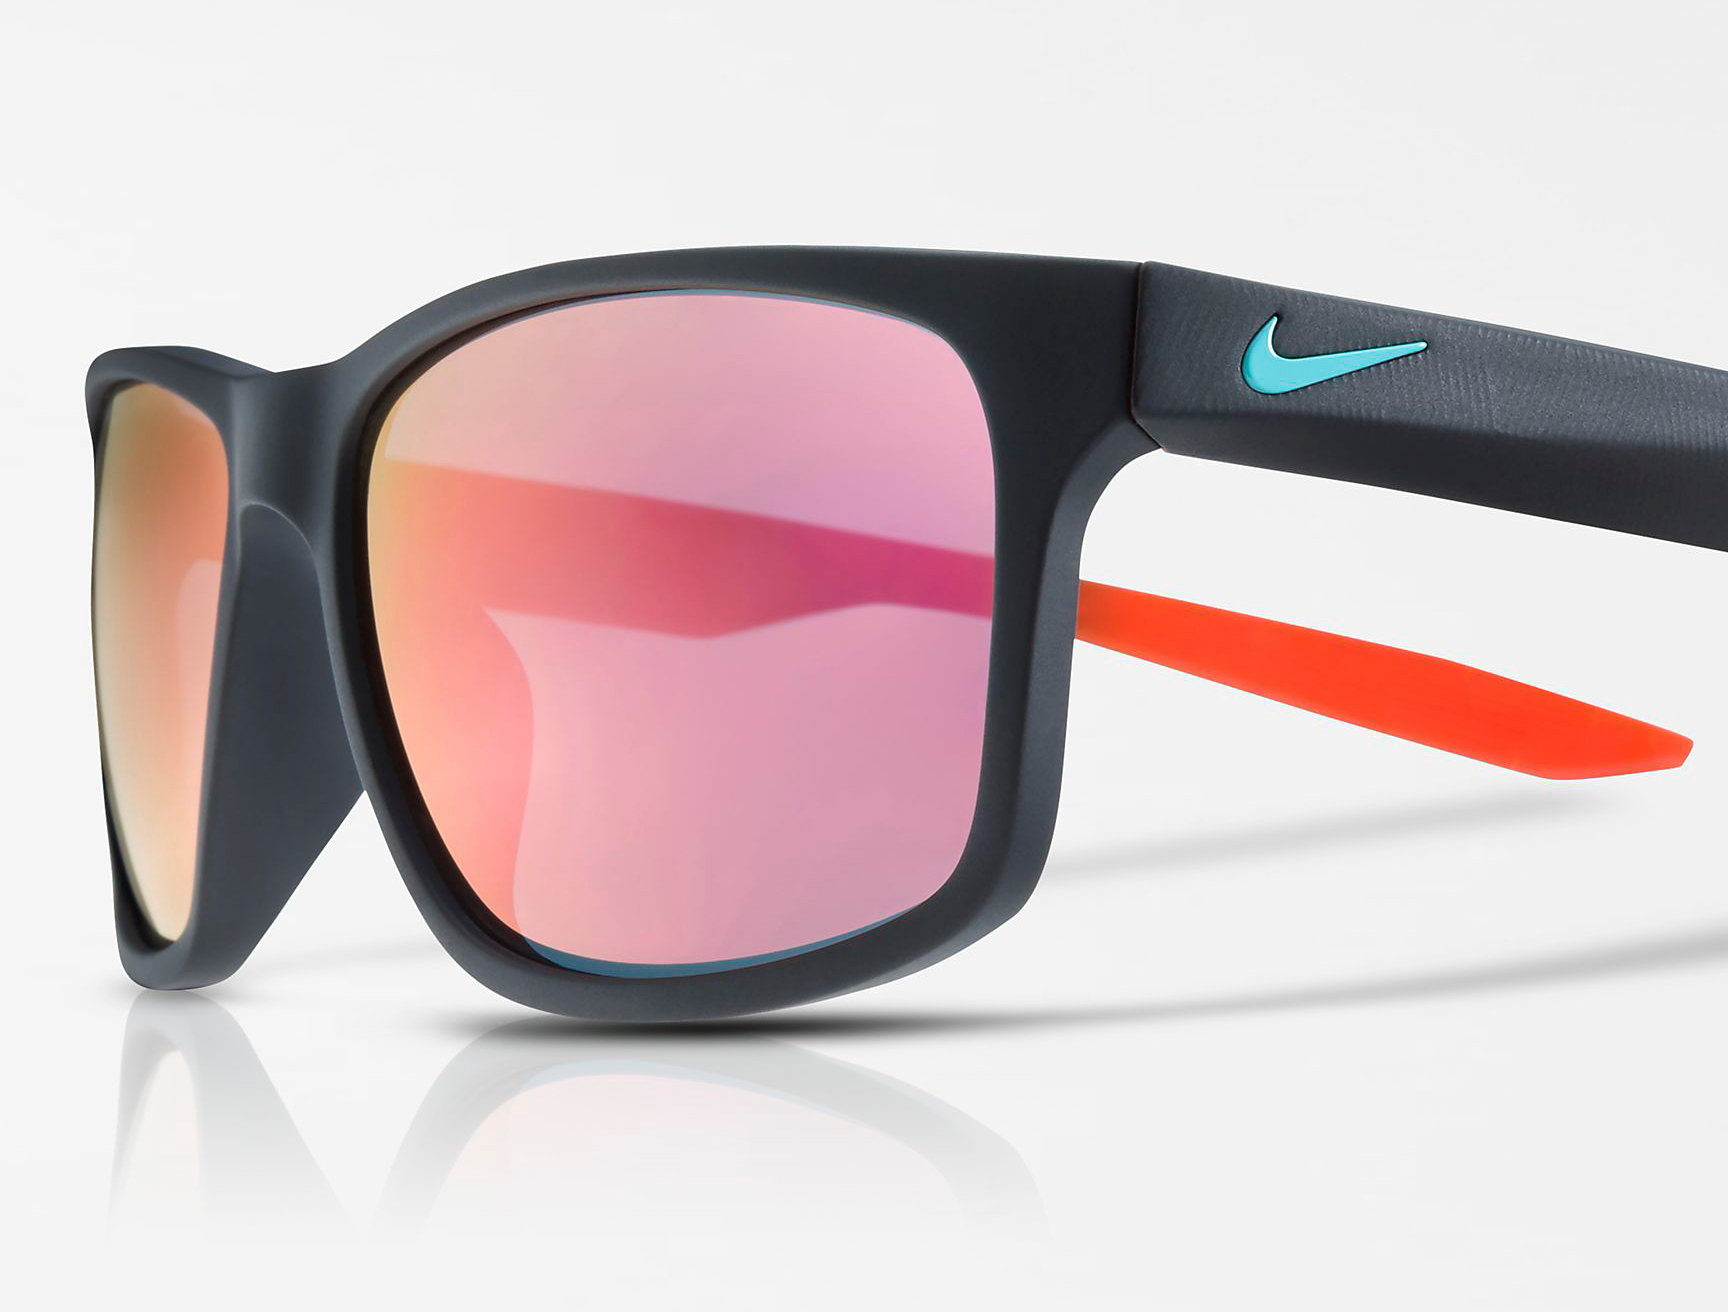 nike-air-max-97-south-beach-sunglasses-match-3